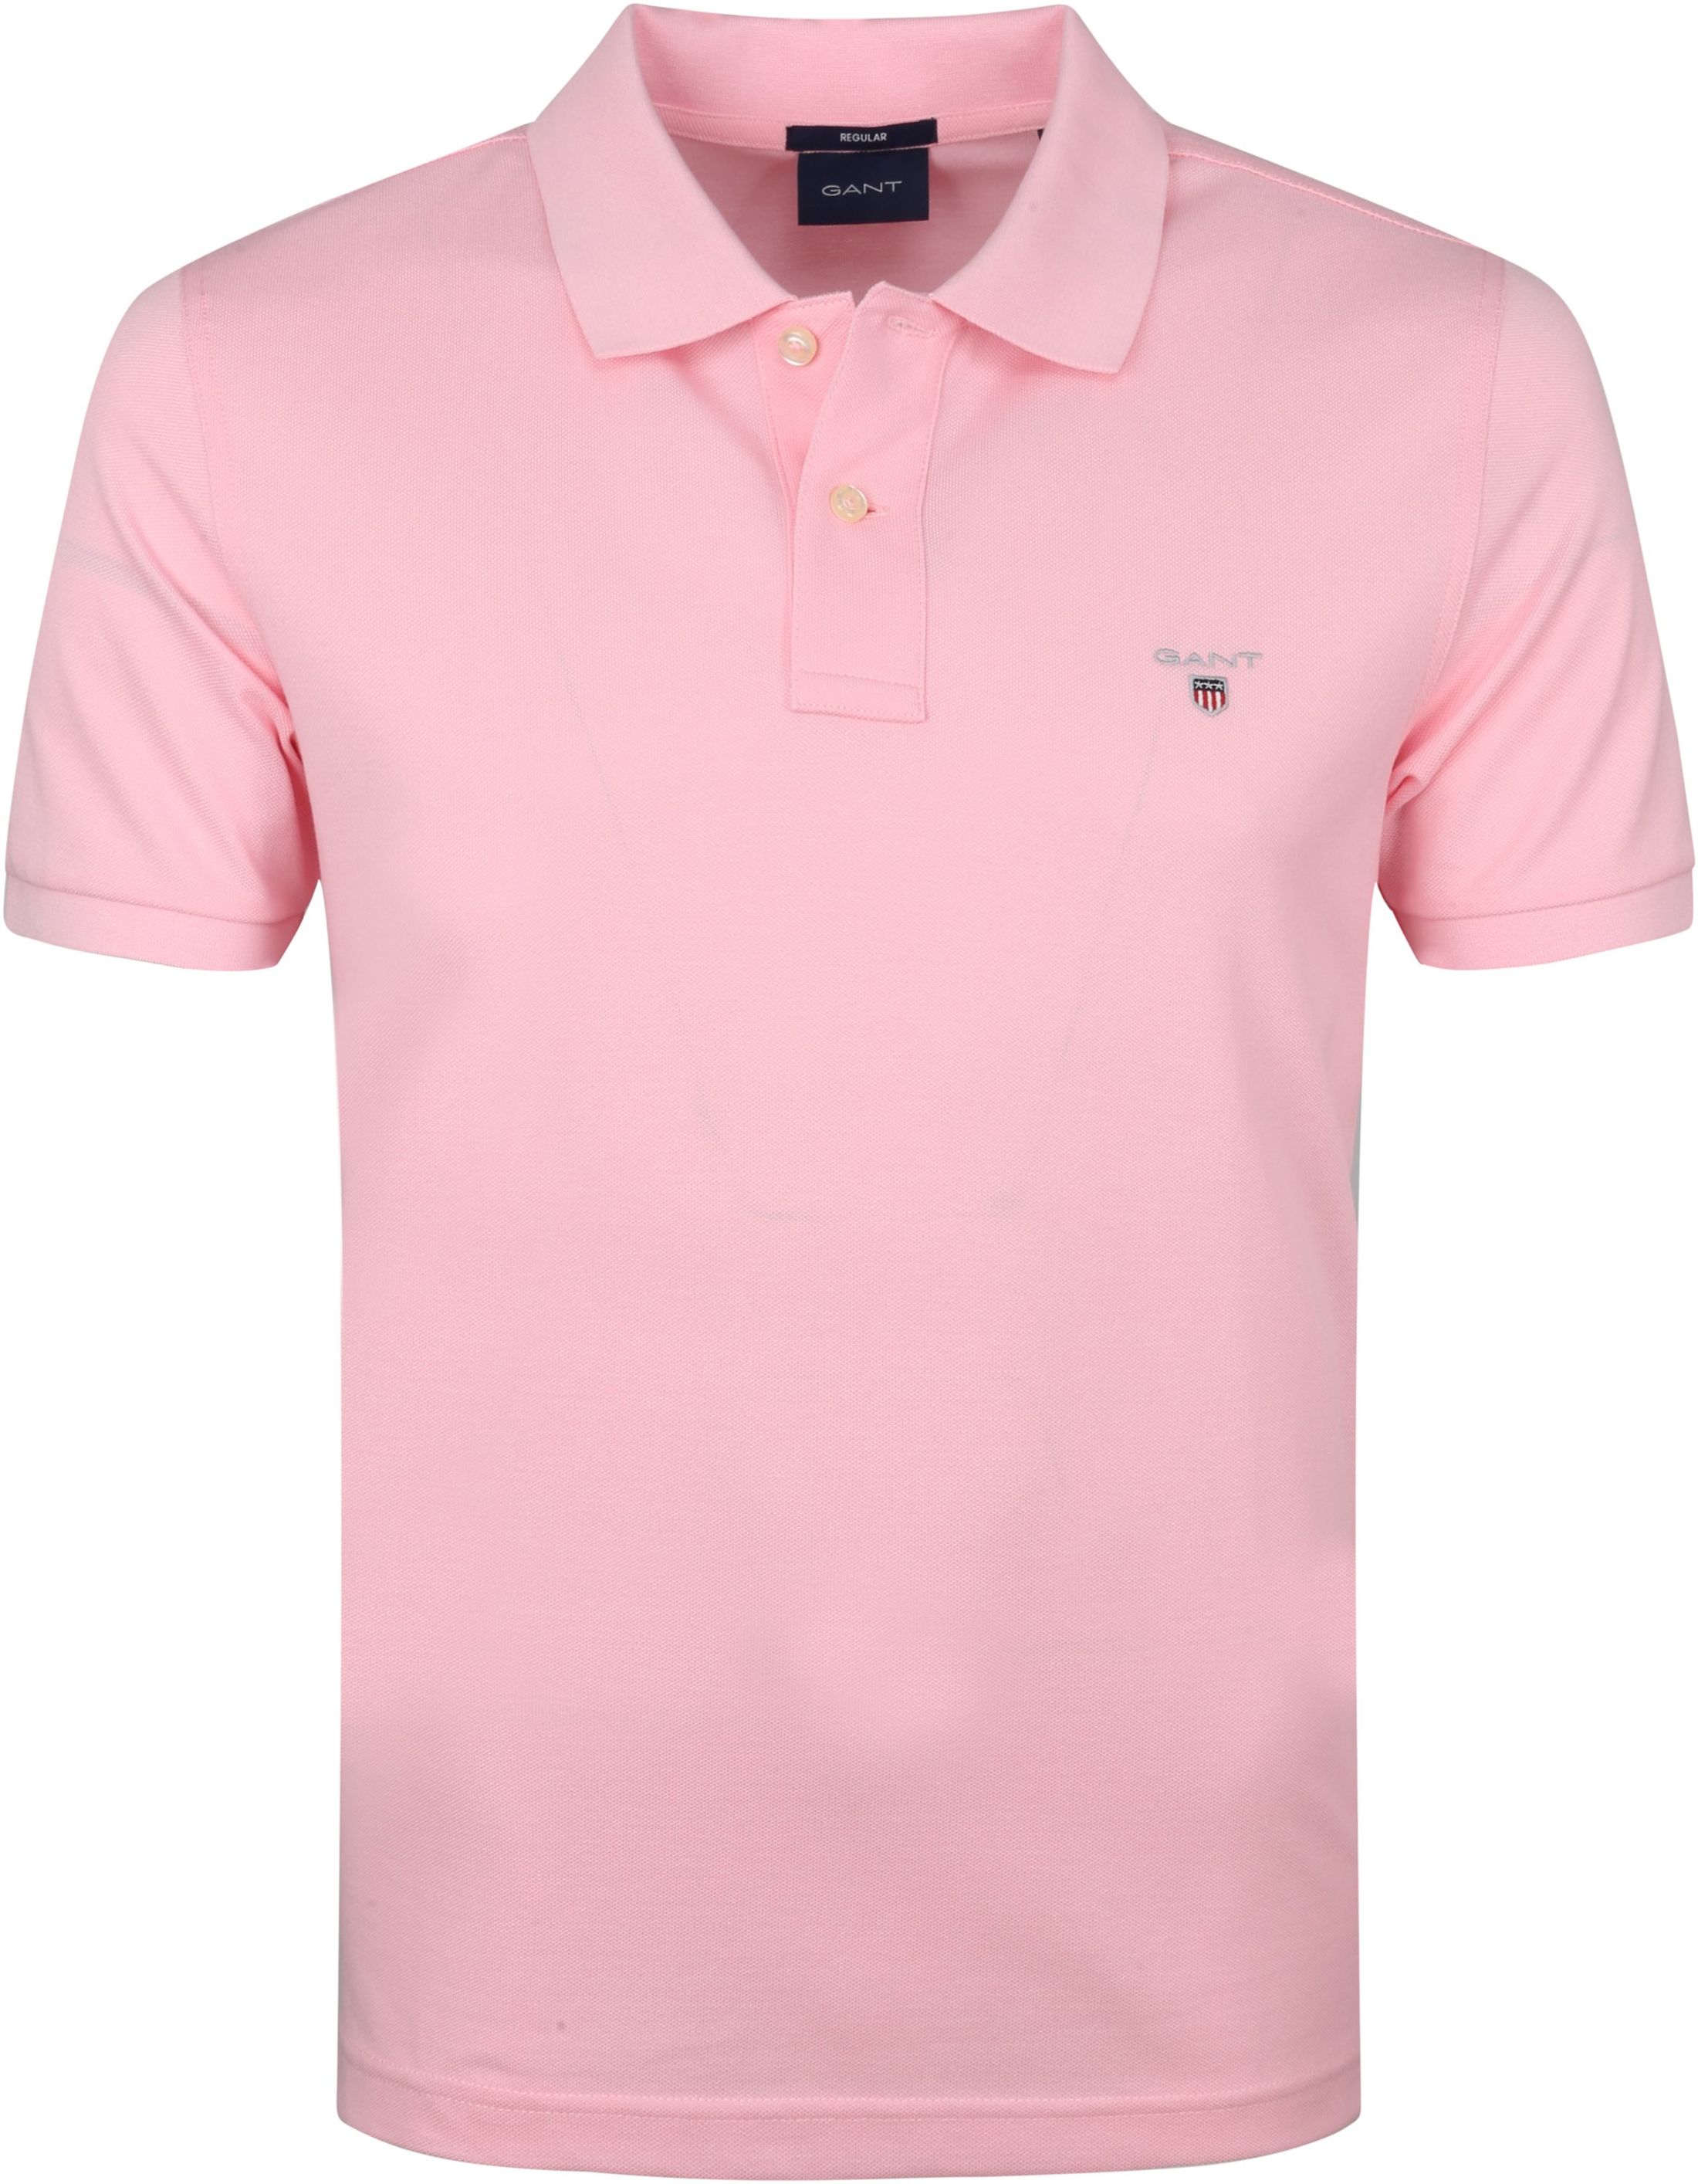 Gant Polo Original Pink size L